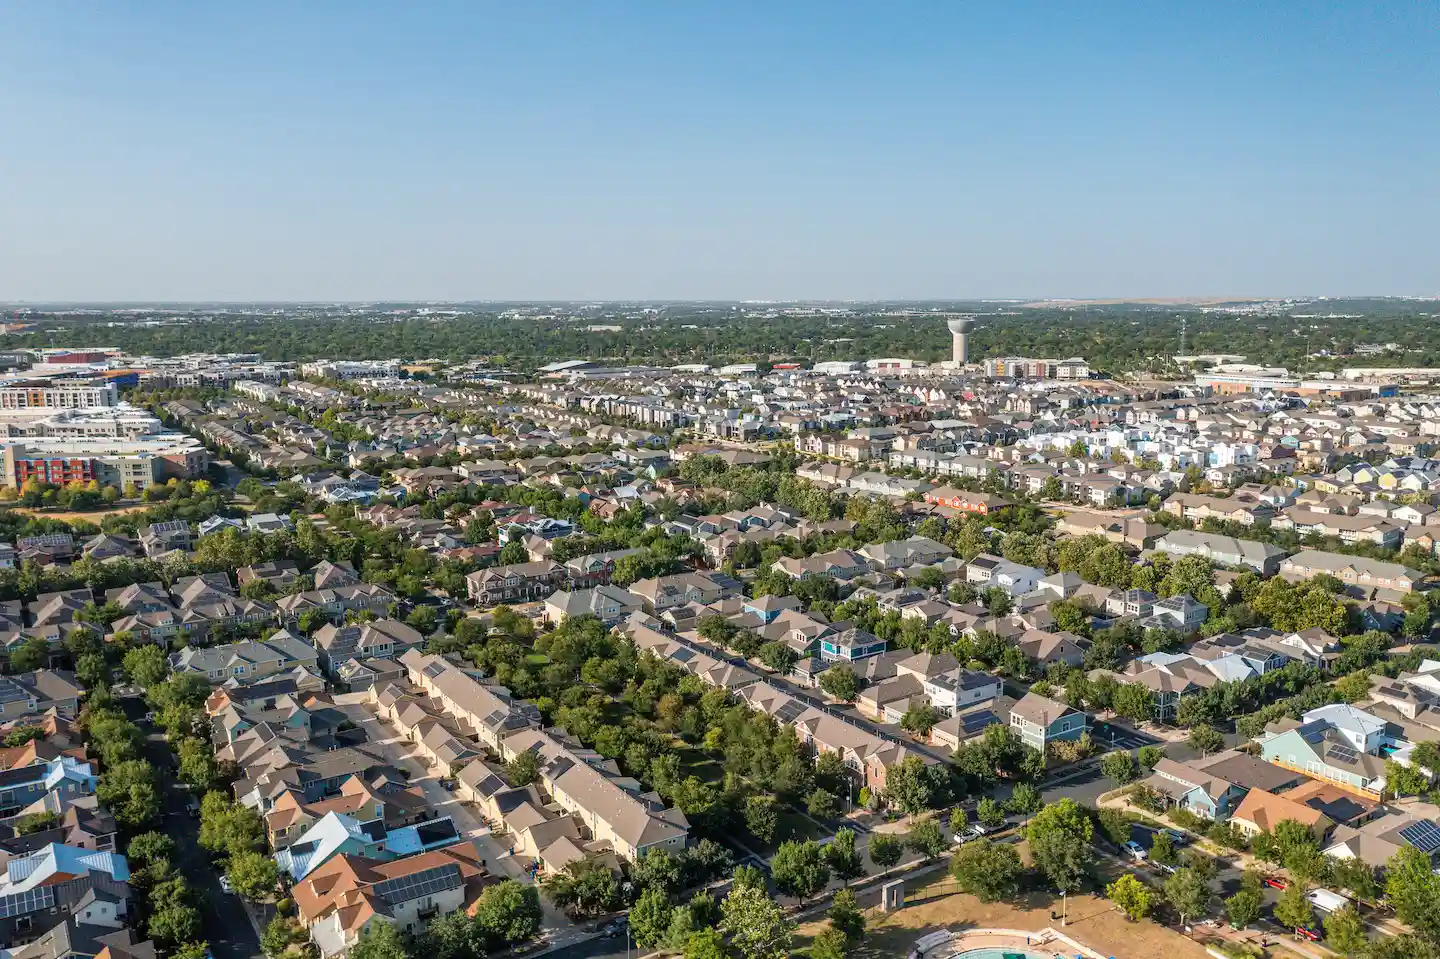 Aerial view of Mueller neighborhood in Northeast Austin.